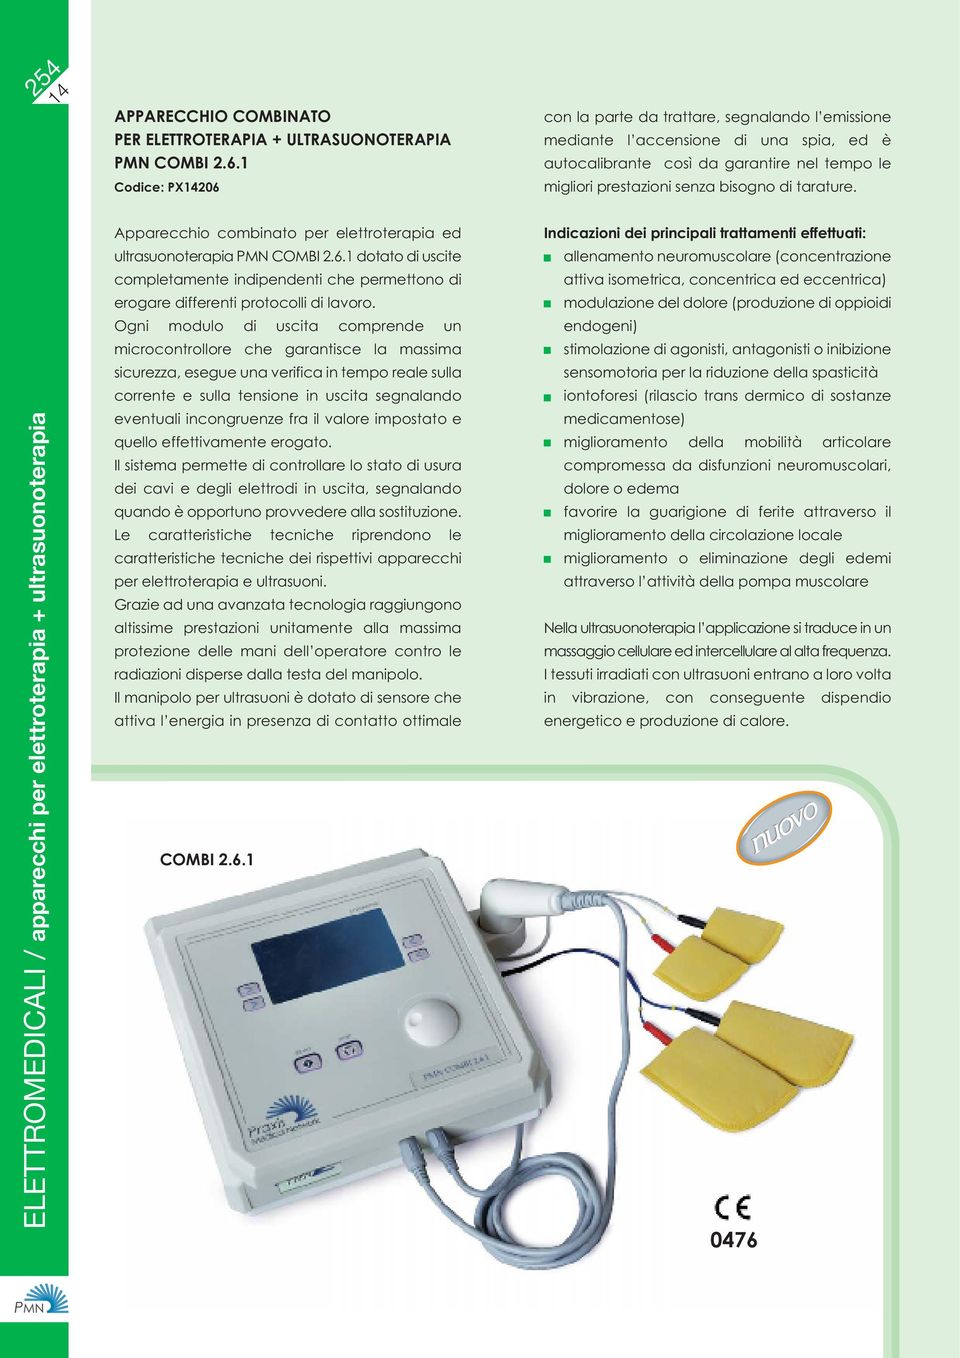 ELETTROMEDICALI / apparecchi per elettroterapia + ultrasuonoterapia Apparecchio combinato per elettroterapia ed ultrasuonoterapia PMN COMBI 2.6.